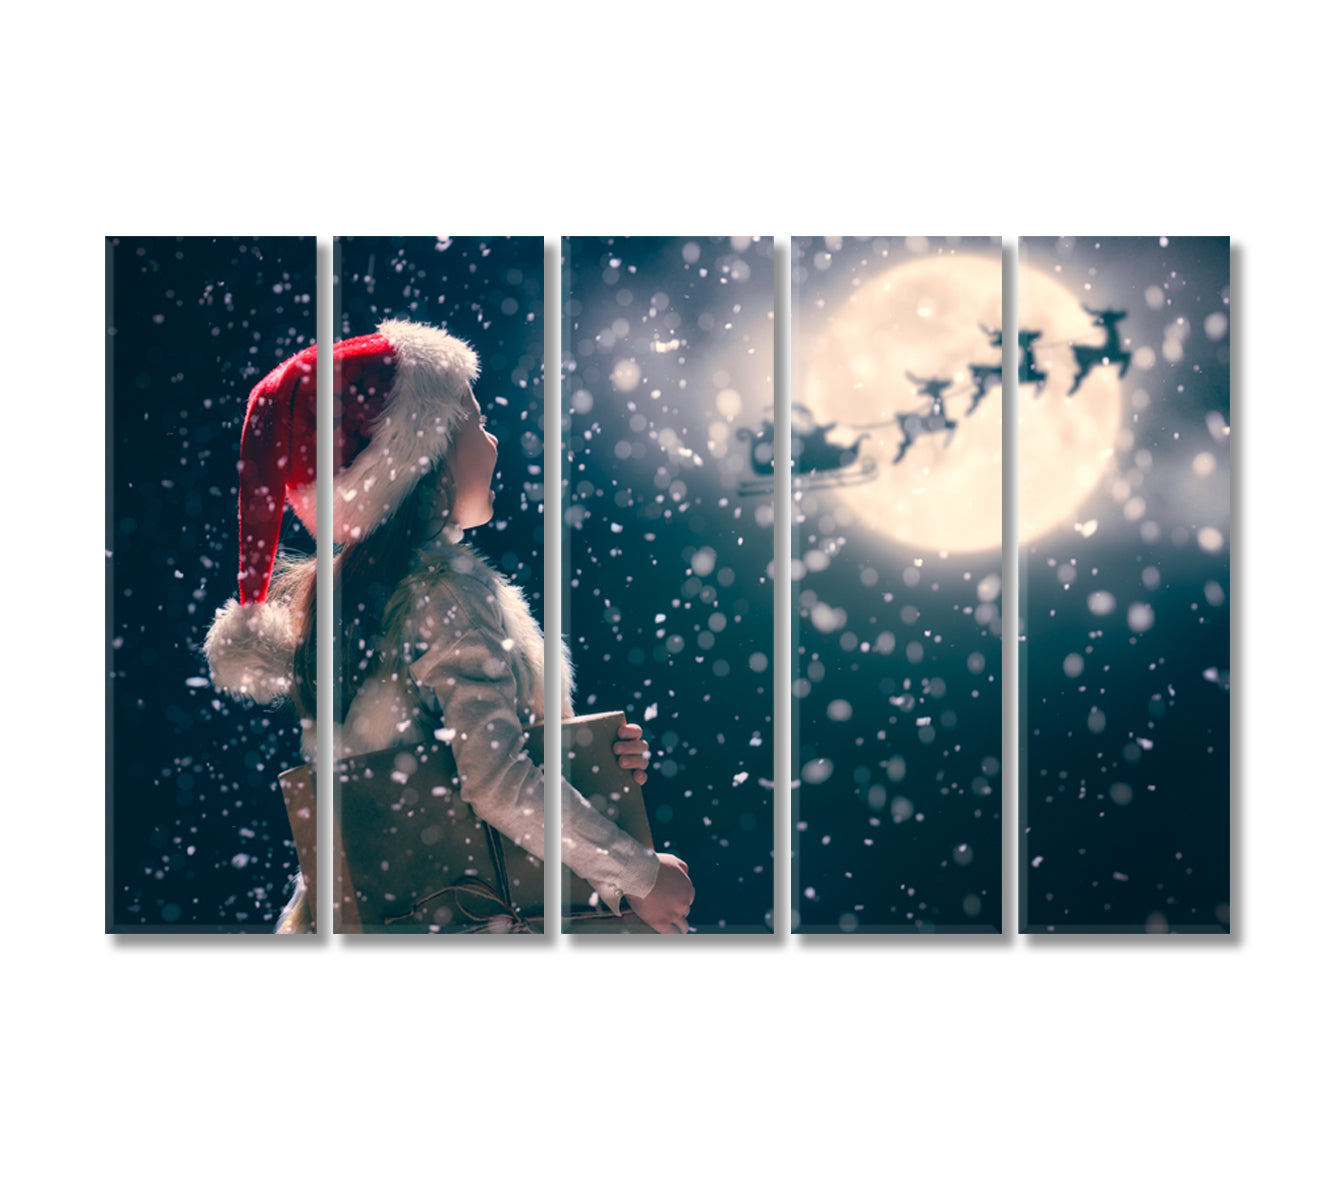 Santa Claus Flies in Sleigh Canvas Print-Canvas Print-CetArt-5 Panels-36x24 inches-CetArt